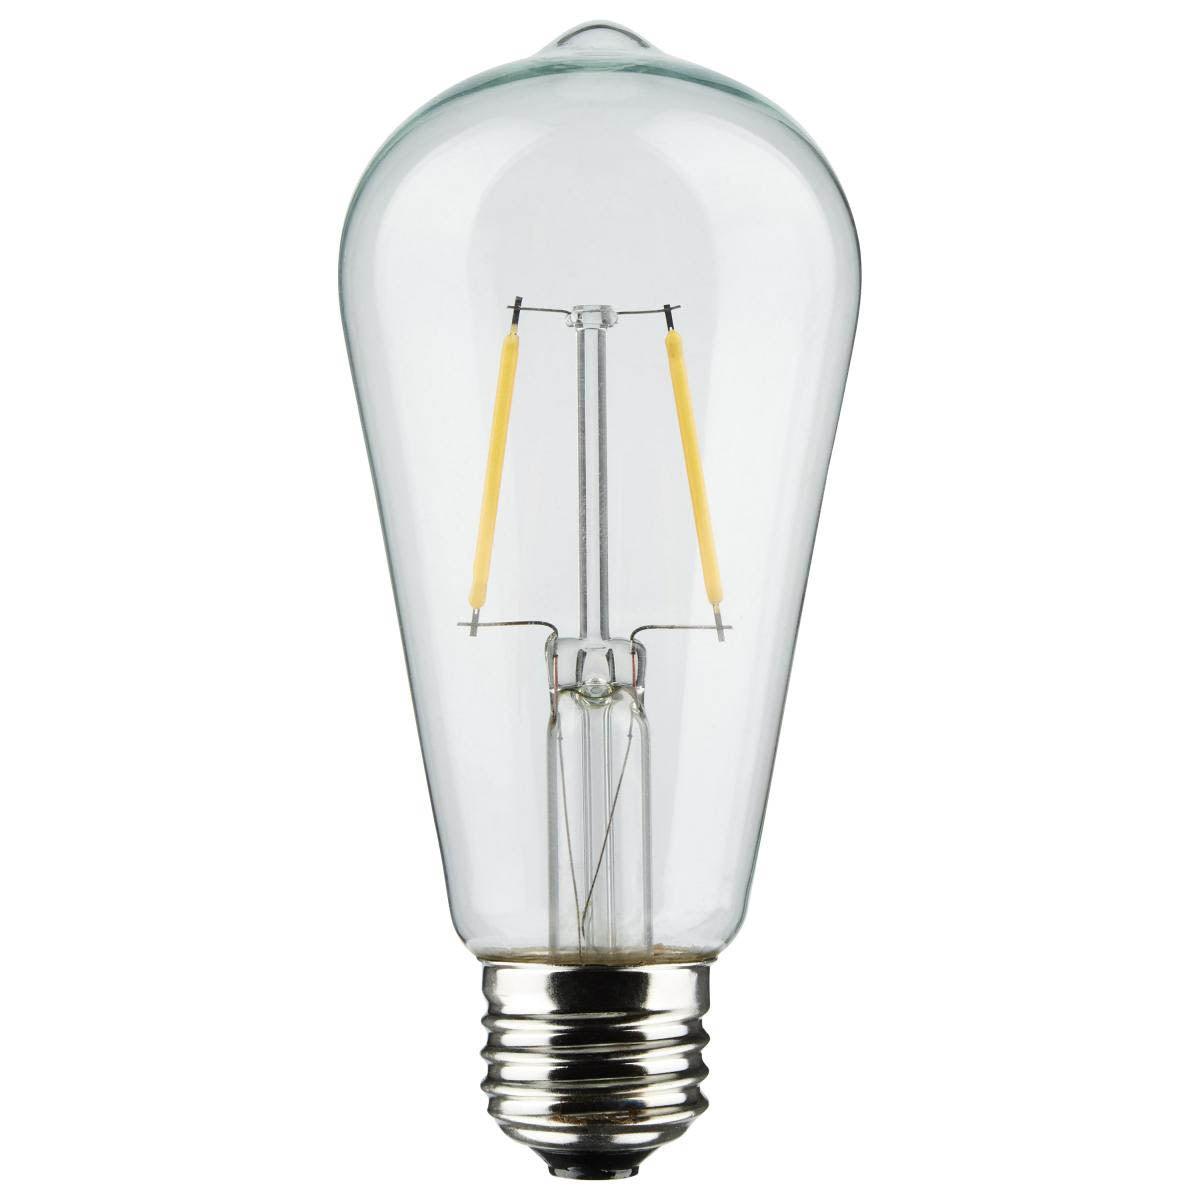 24 Feet LED String Light, 12 ST19 bulbs, Warm White 2200K, 120V, Indoor/Outdoor